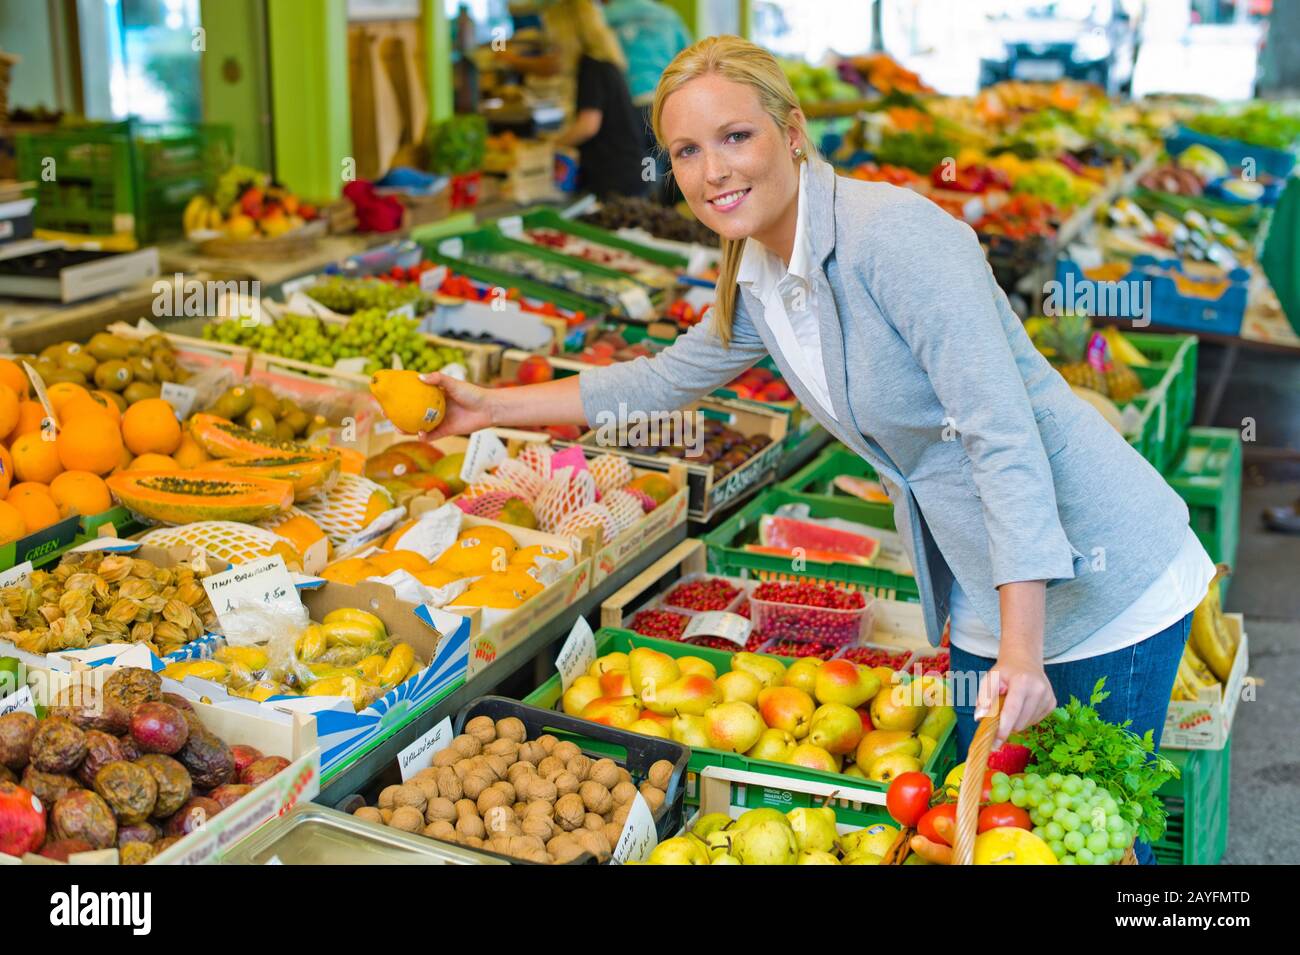 Eine junge Frau kauft Obst und Gituese auf einem Wochenmarkt. Ernaehrung und Ausführung von Grünen. Banque D'Images